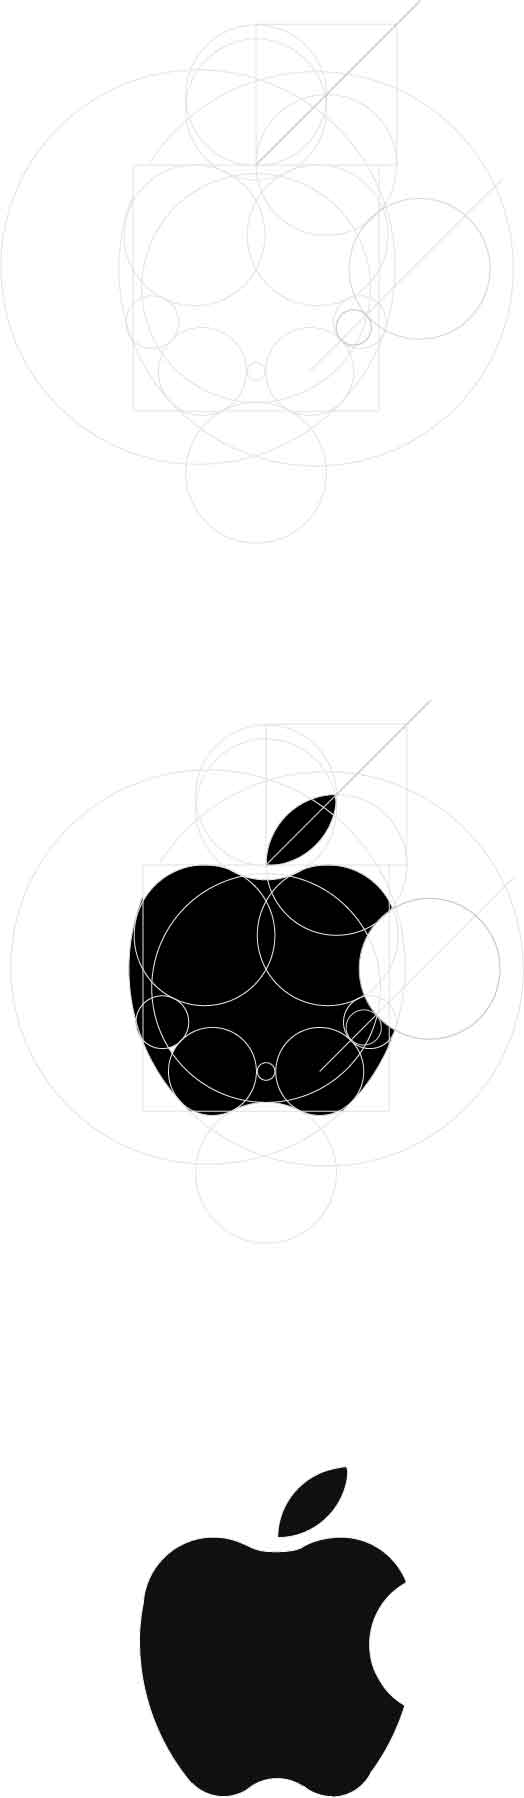 苹果logo设计稿图片